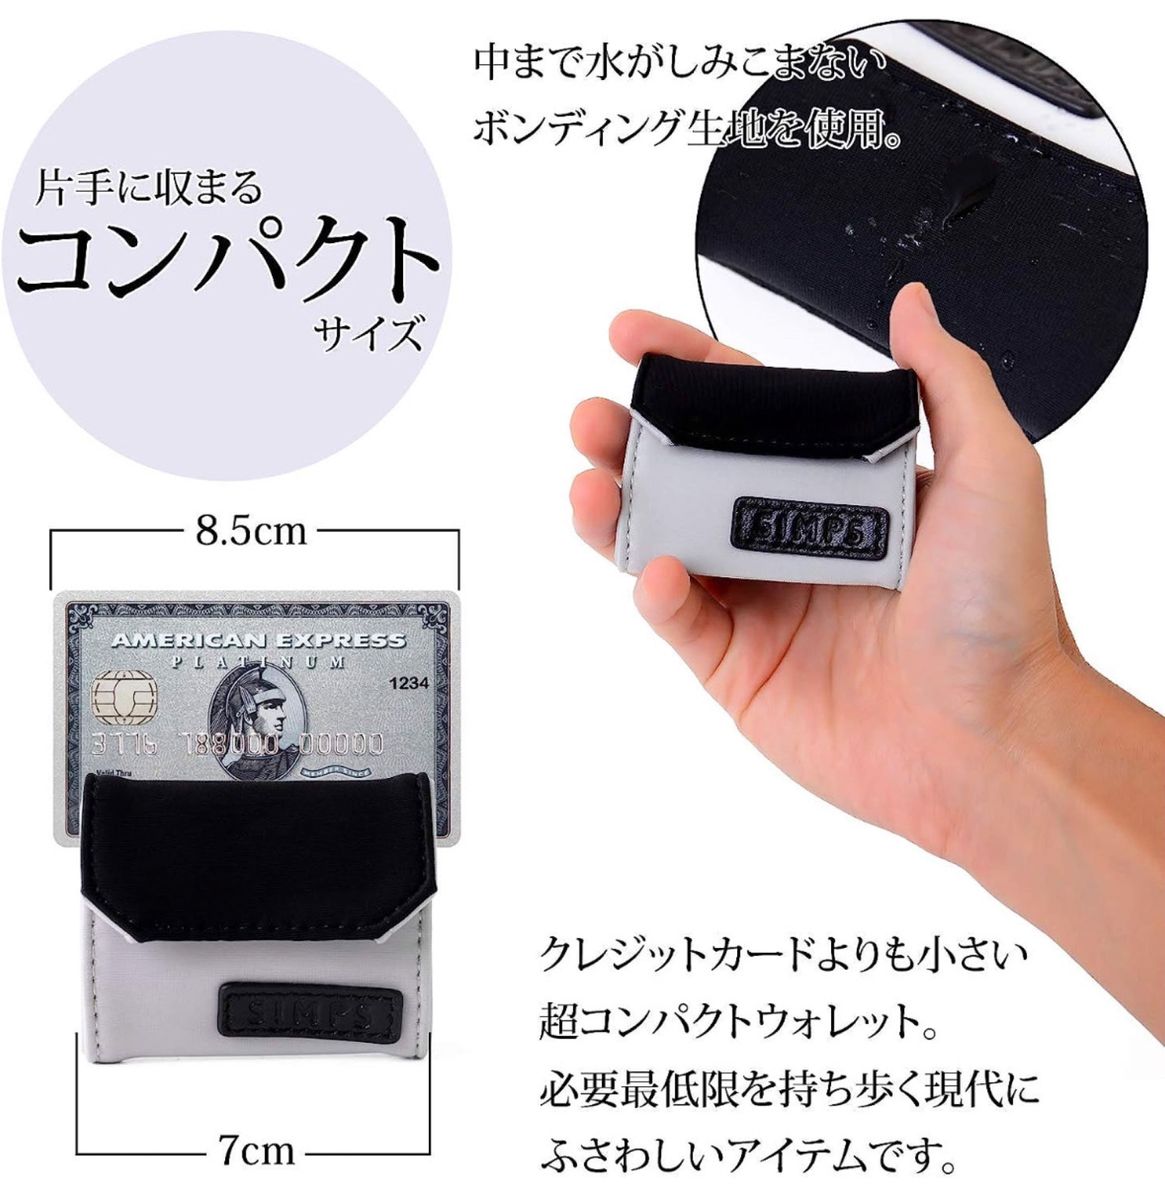 極小財布 小銭入れ 小さい財布 ポケットカード コインケース ウォレット レザー 財布 コインケース コンパクト ミニ財布 